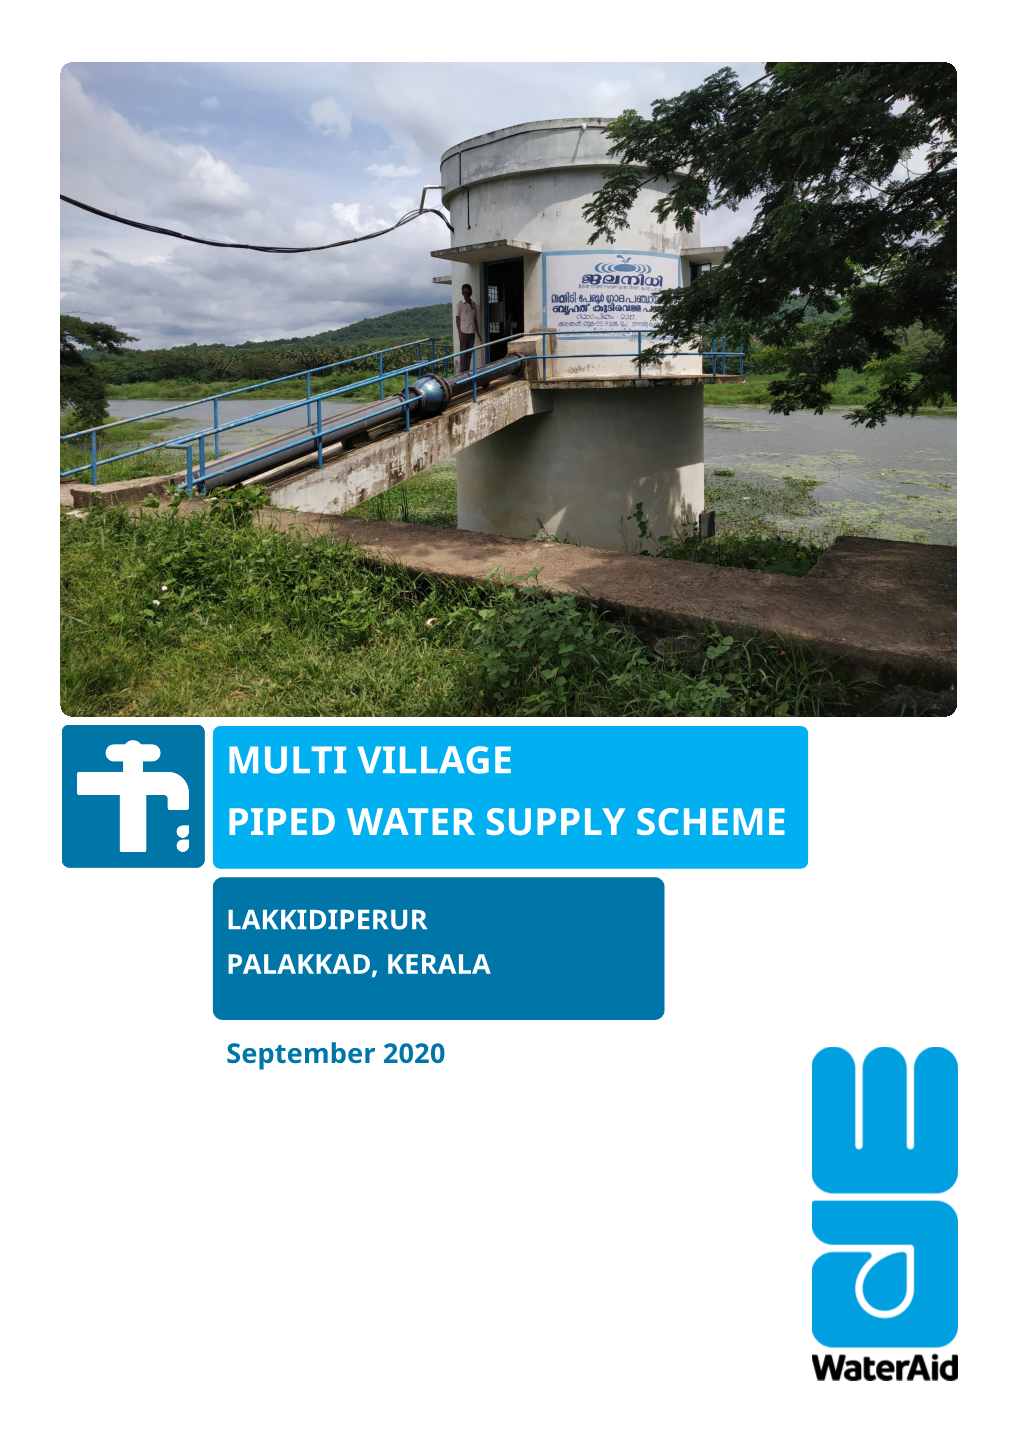 Multi Village Piped Water Supply Scheme